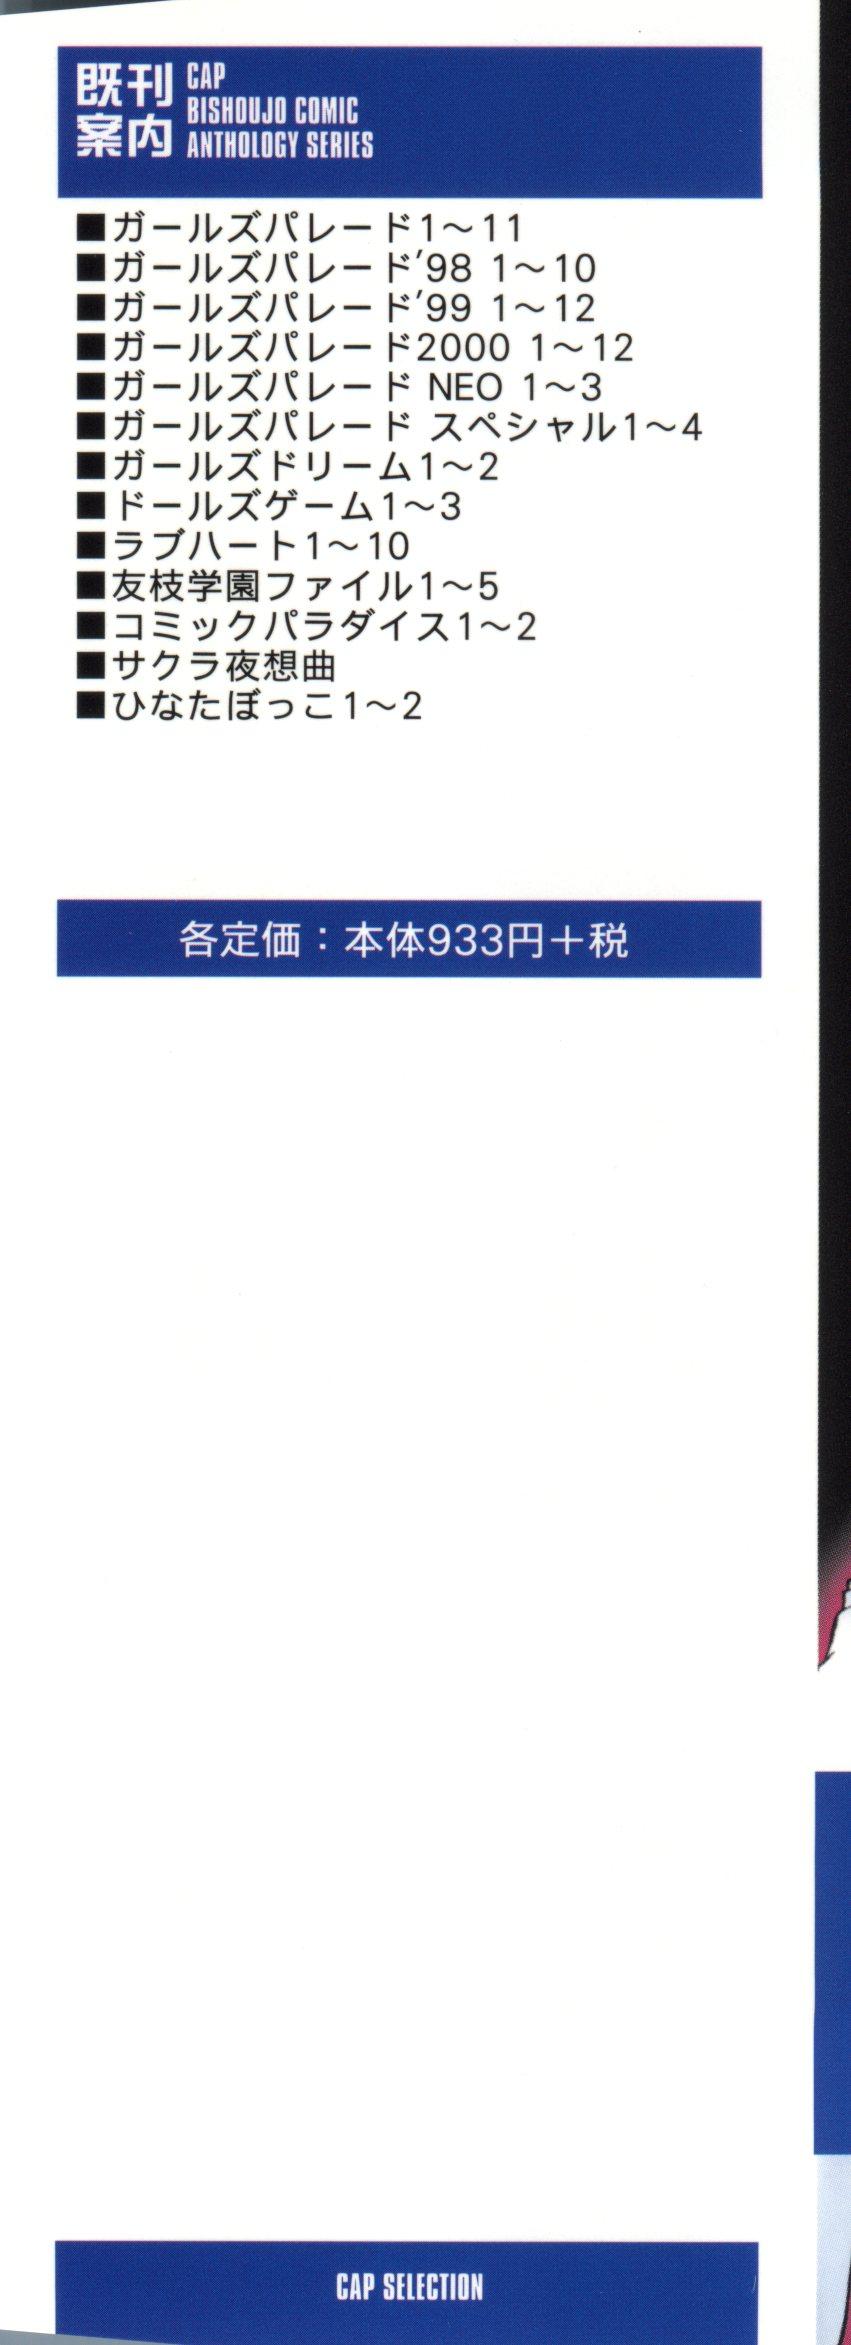 Lesbos Tomoeda Gakuen File 5 - Cardcaptor sakura Lez - Page 3